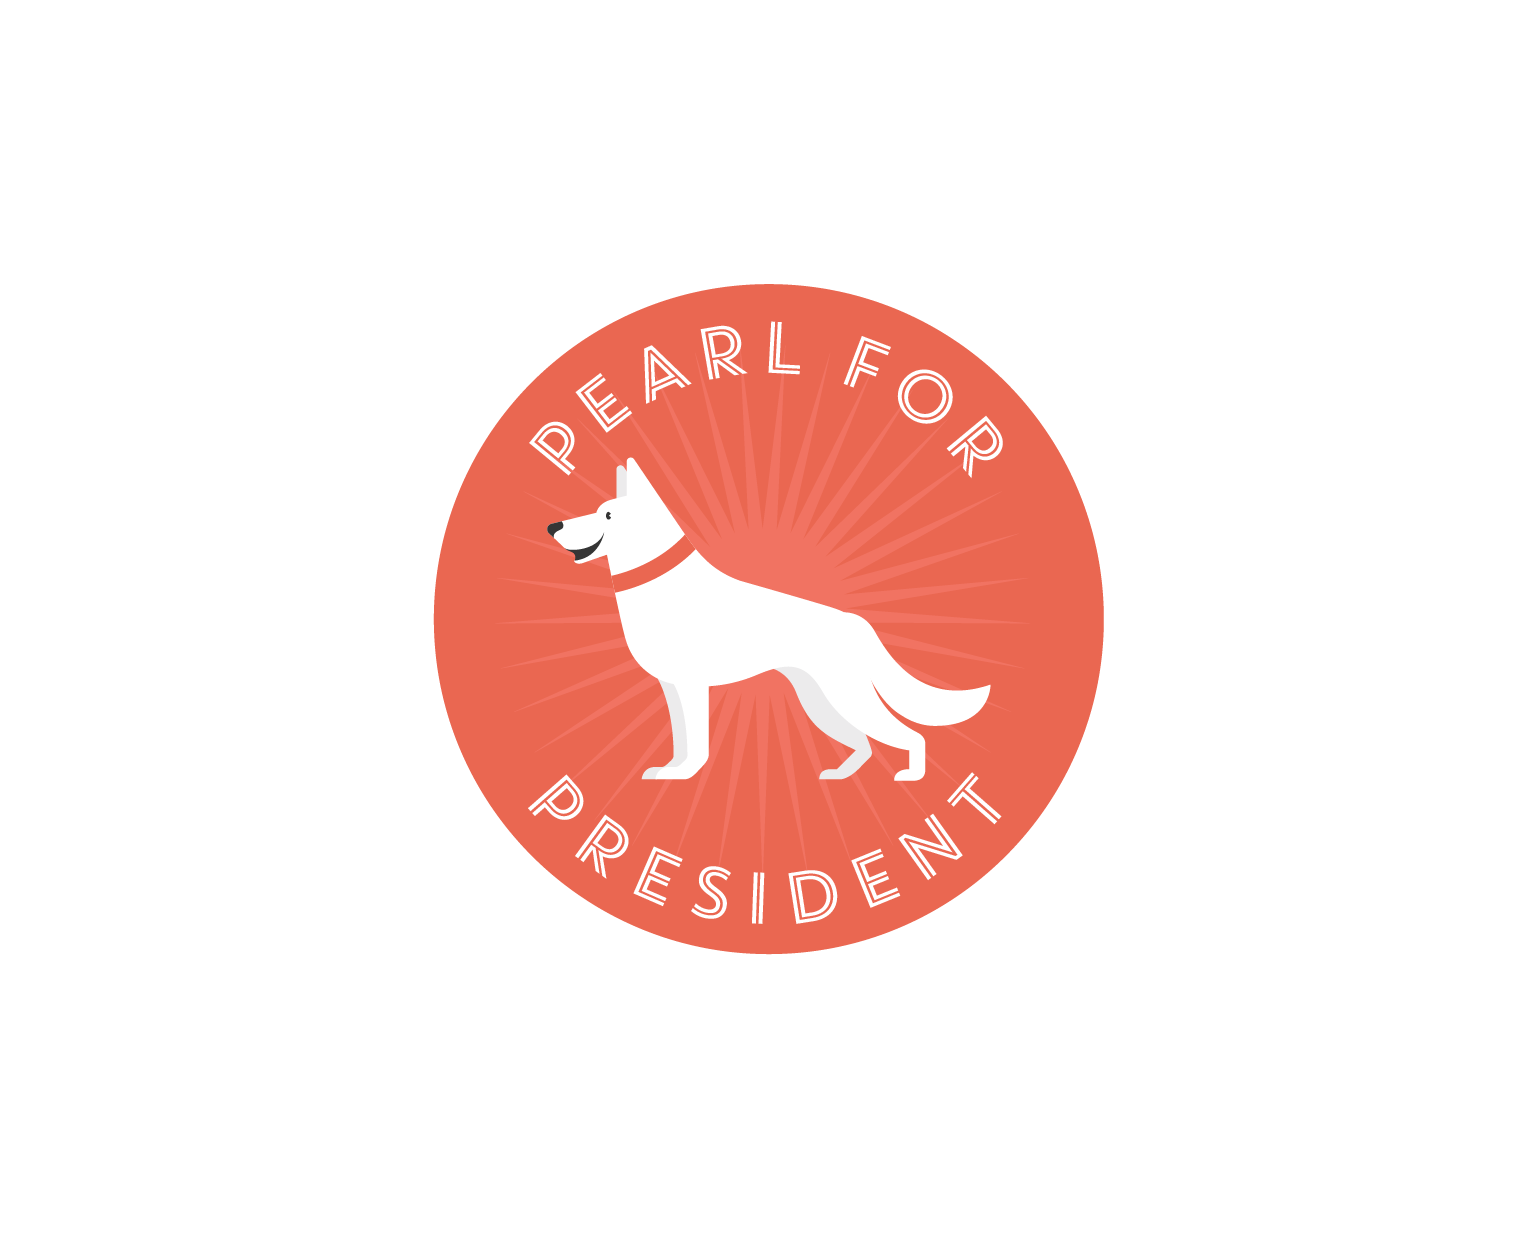 Pearl for President - Logo Design